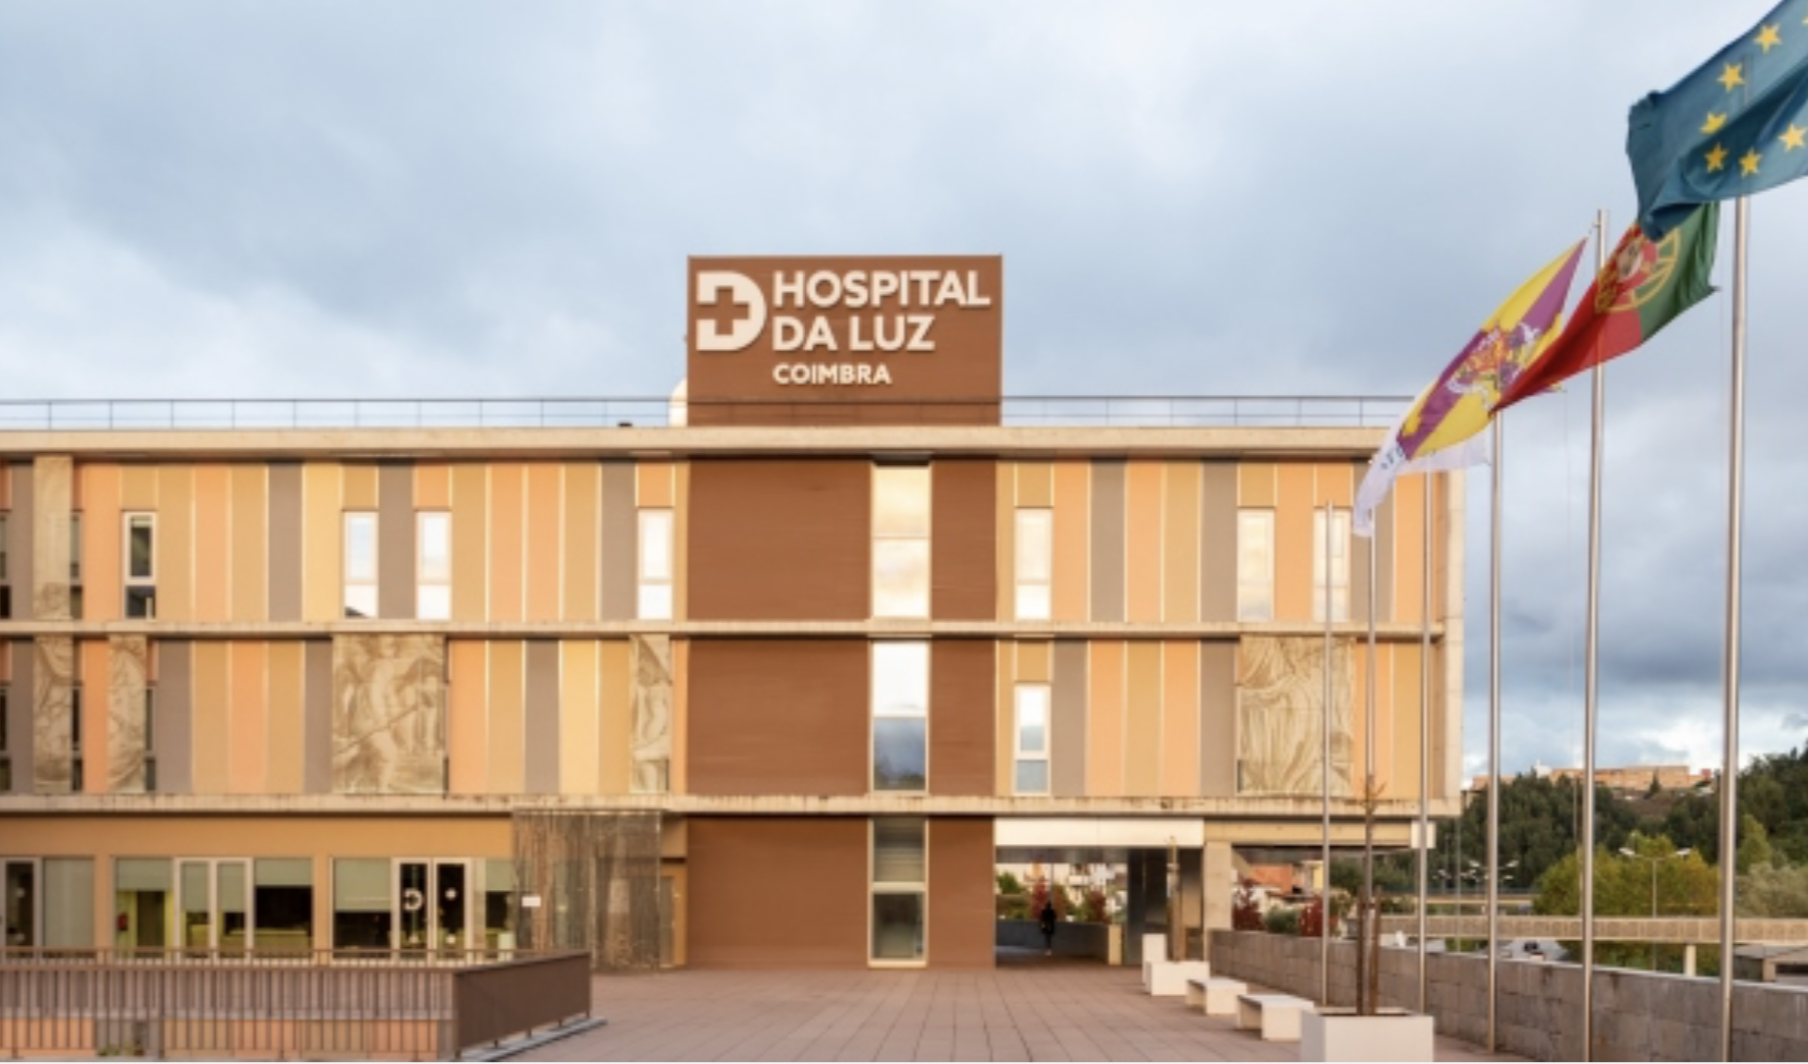 Hospital da Luz Coimbra